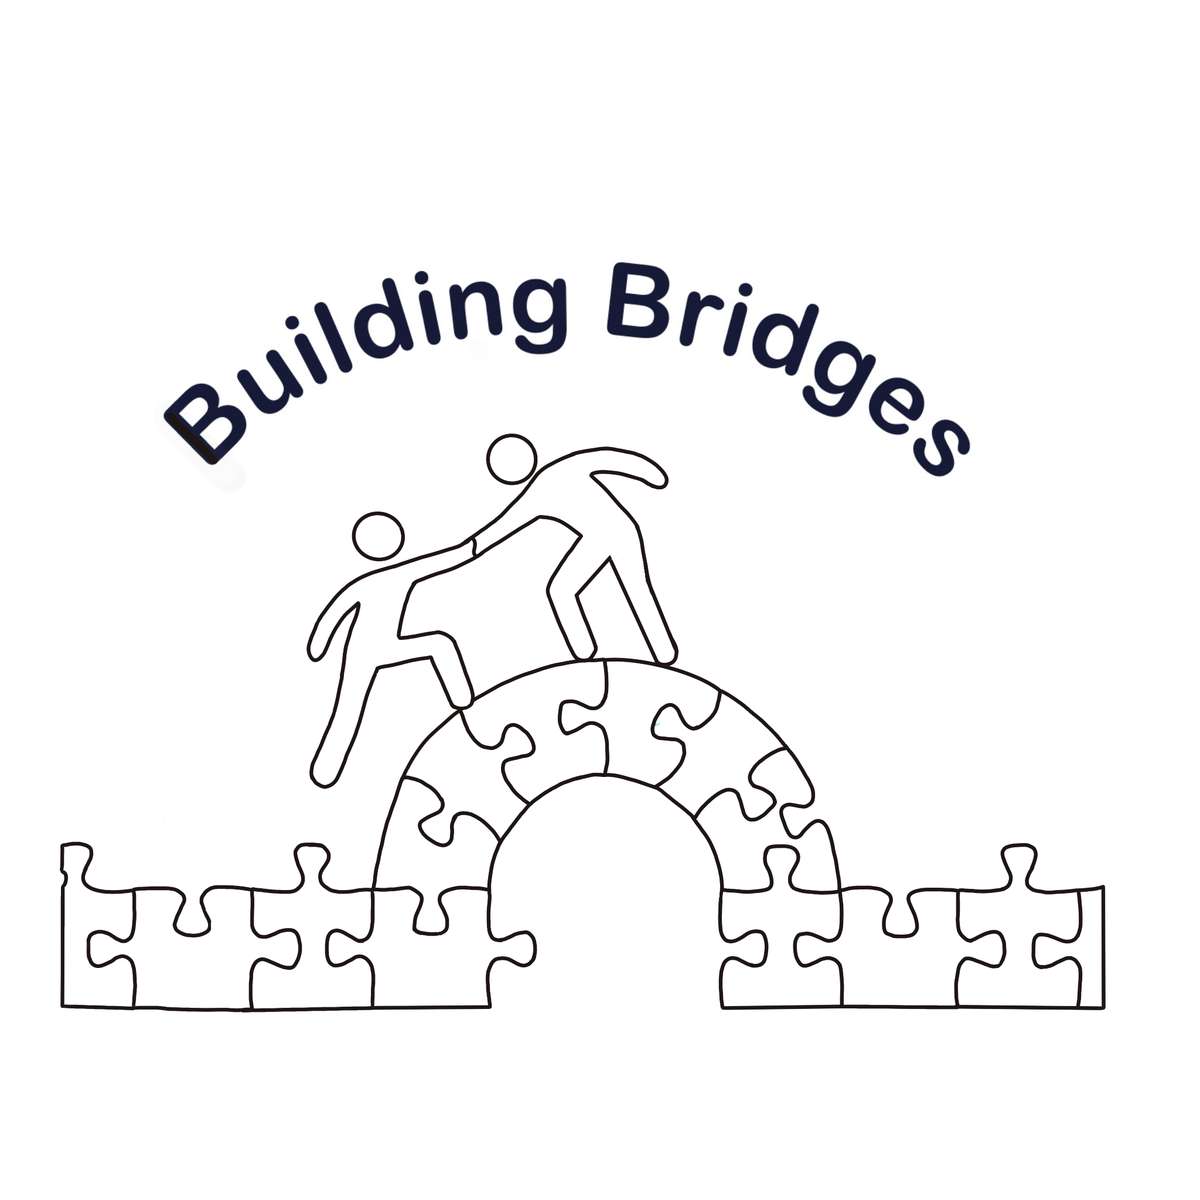 Building bridges puzzle online from photo